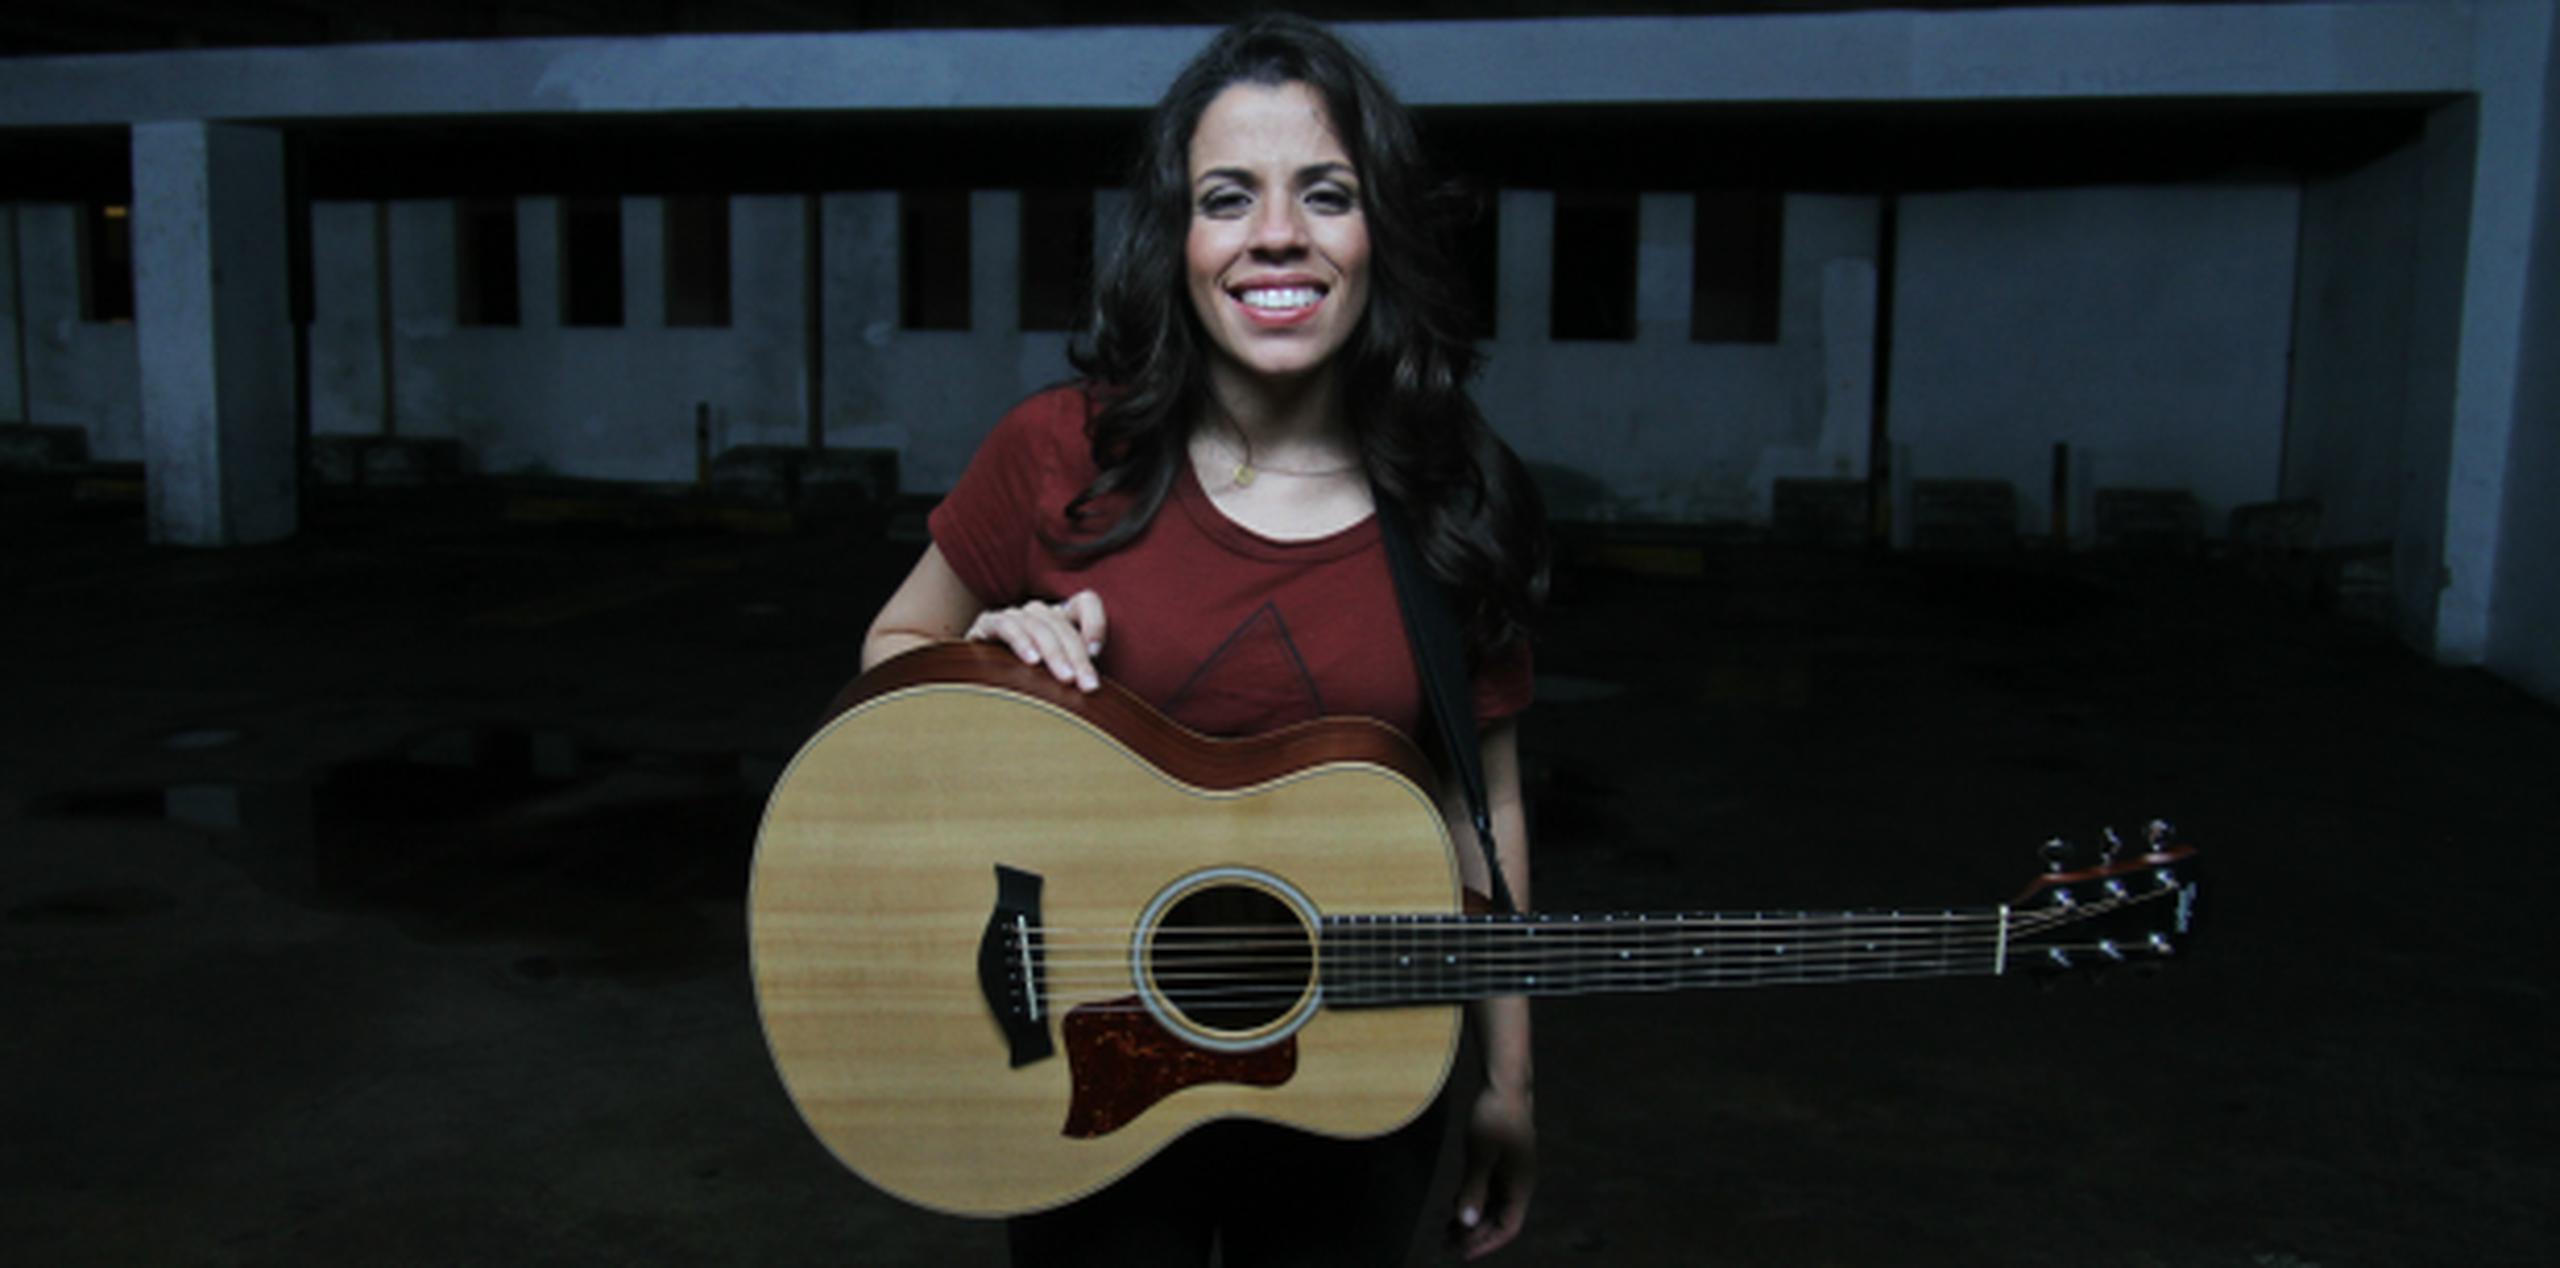 La cantautora puertorriqueña Nore Feliciano dirigió la propuesta visual de “Aunque te cueste”. (Suministrada)